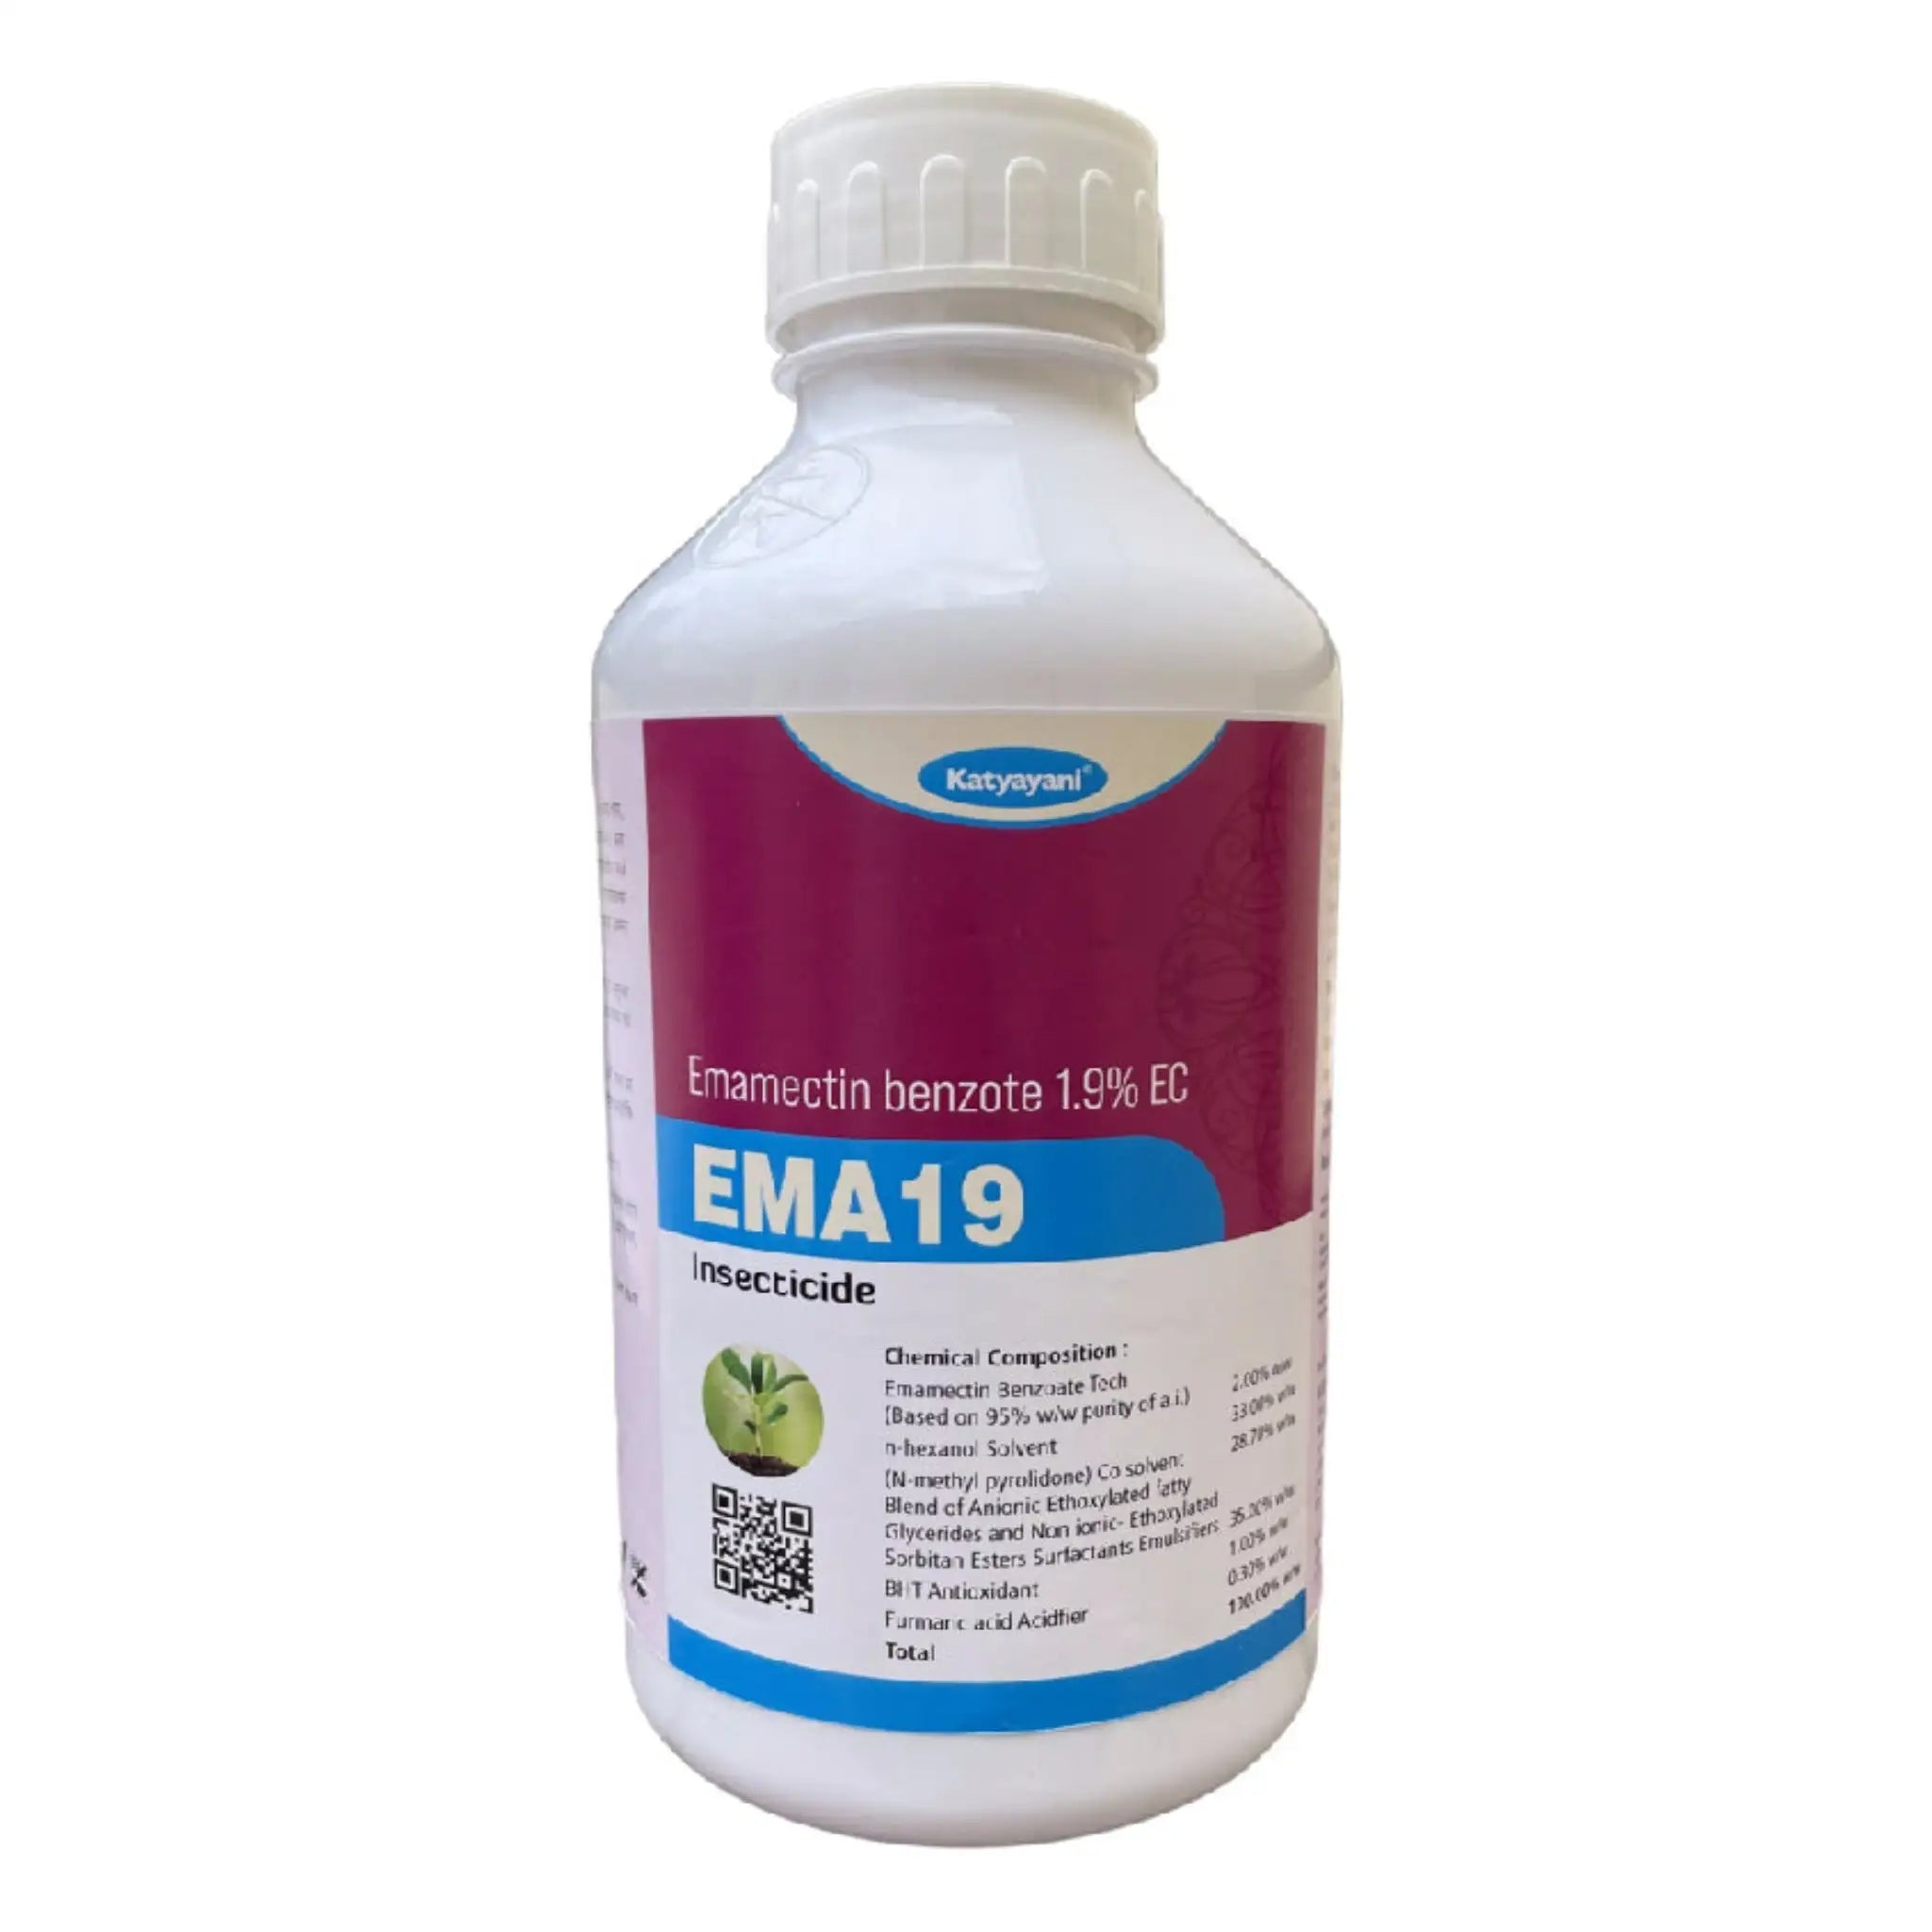 कात्यायनी EMA 19 | इमामेक्टिन बेंजोट 1.9% EC। रासायनिक कीटनाशक